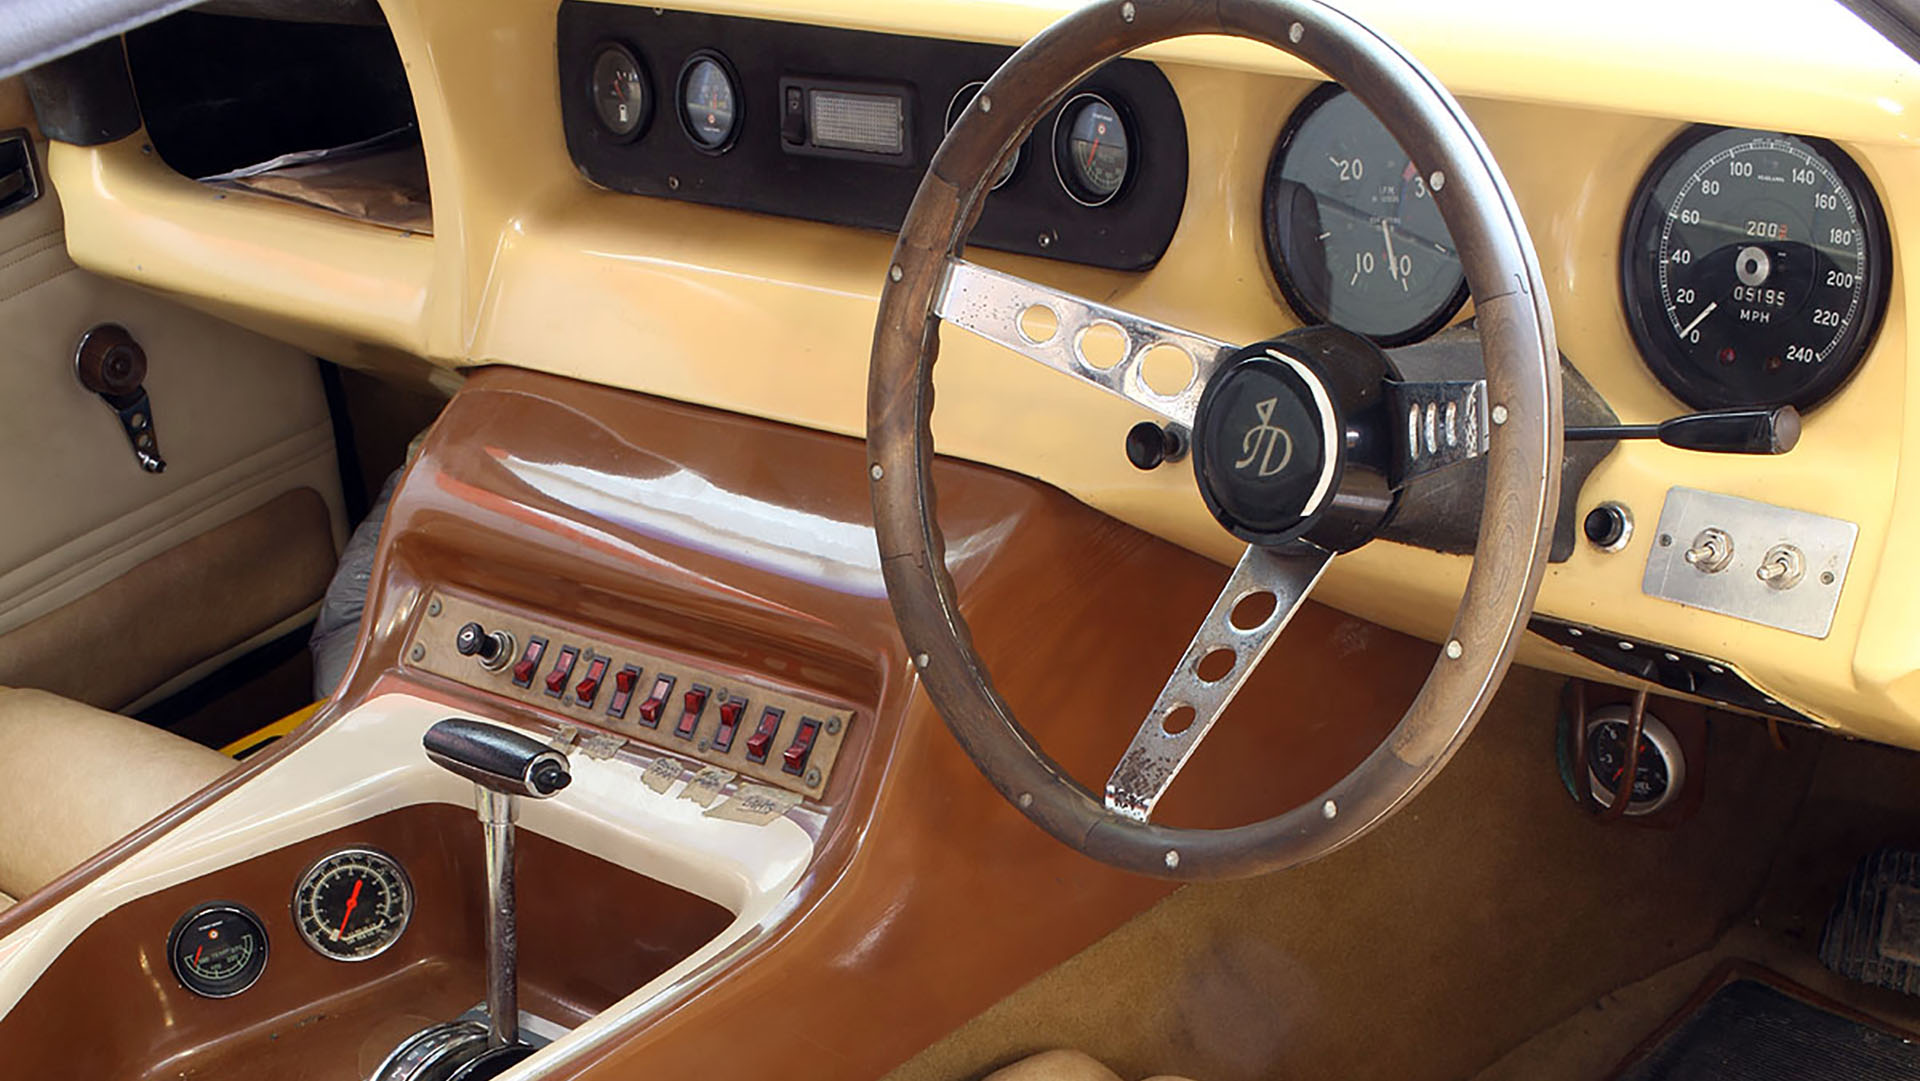 En el interior, el volante también tiene las iniciales de John Dodd. Se aprecia la palanca de cambios de la caja automática de solo 3 velocidades